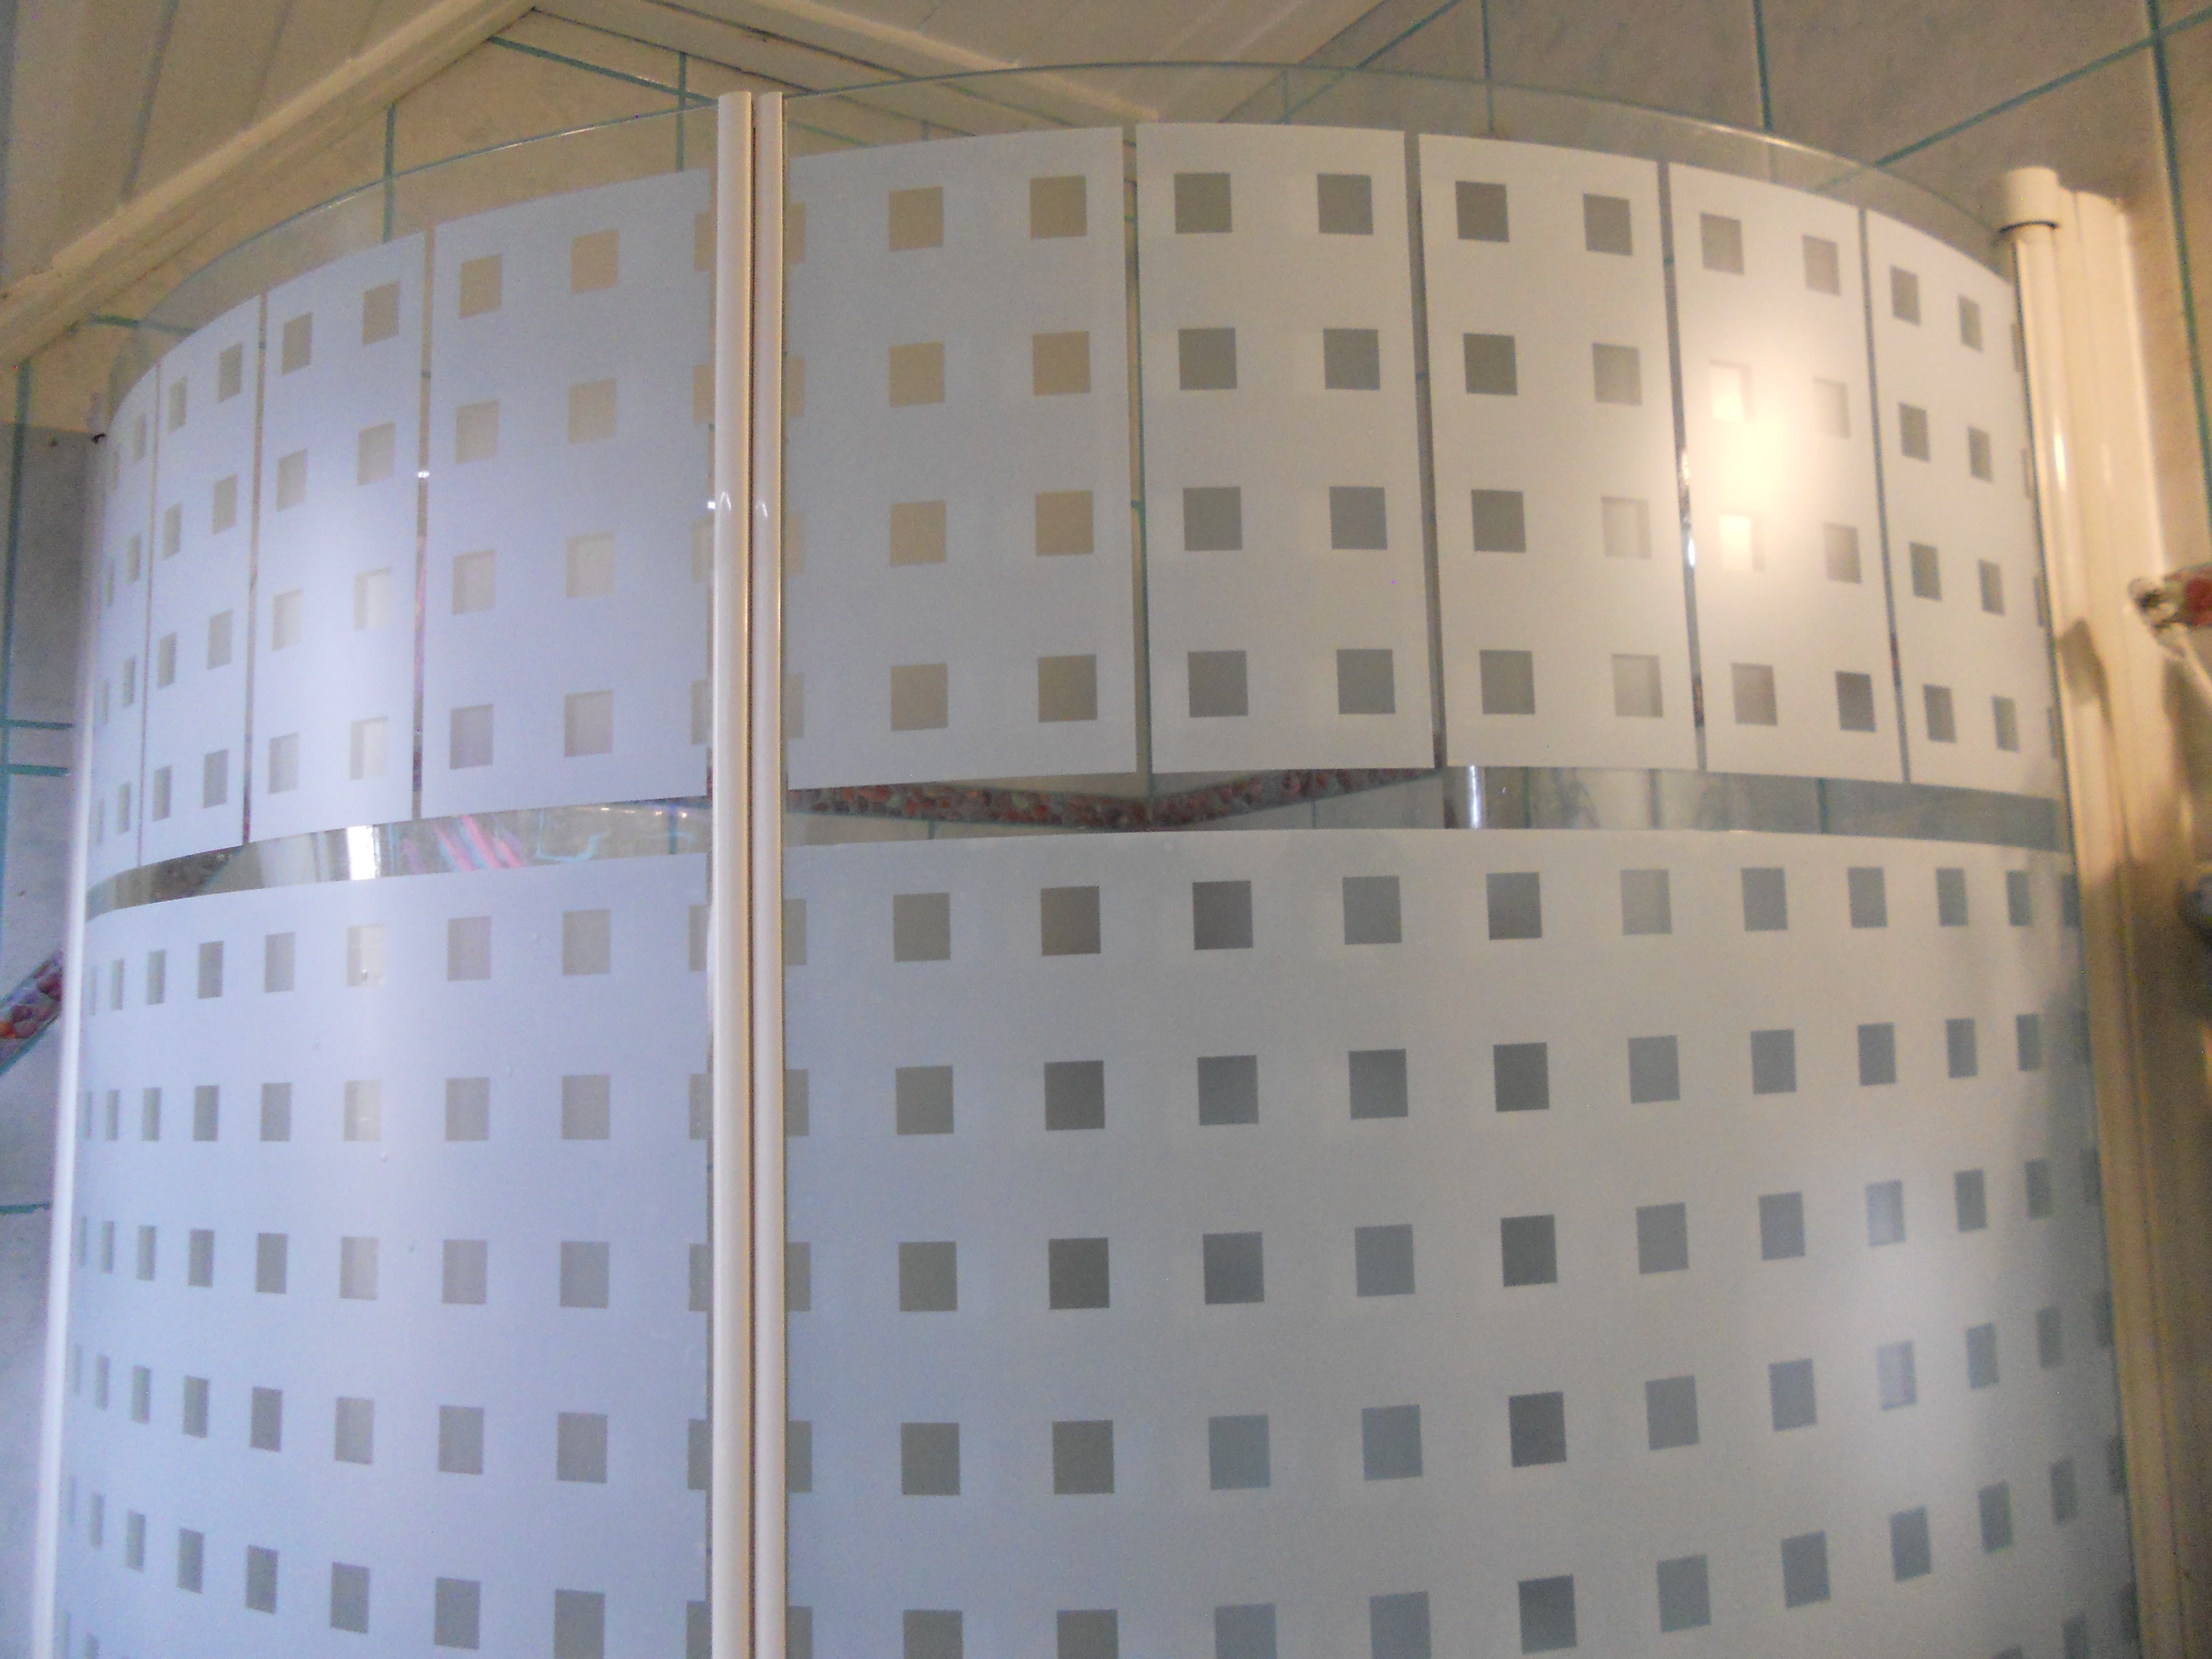   Szabályos Kocka Ragasztó Nélküli Prémium Ablakfólia (Caree) (1,5 m x 90 cm)
